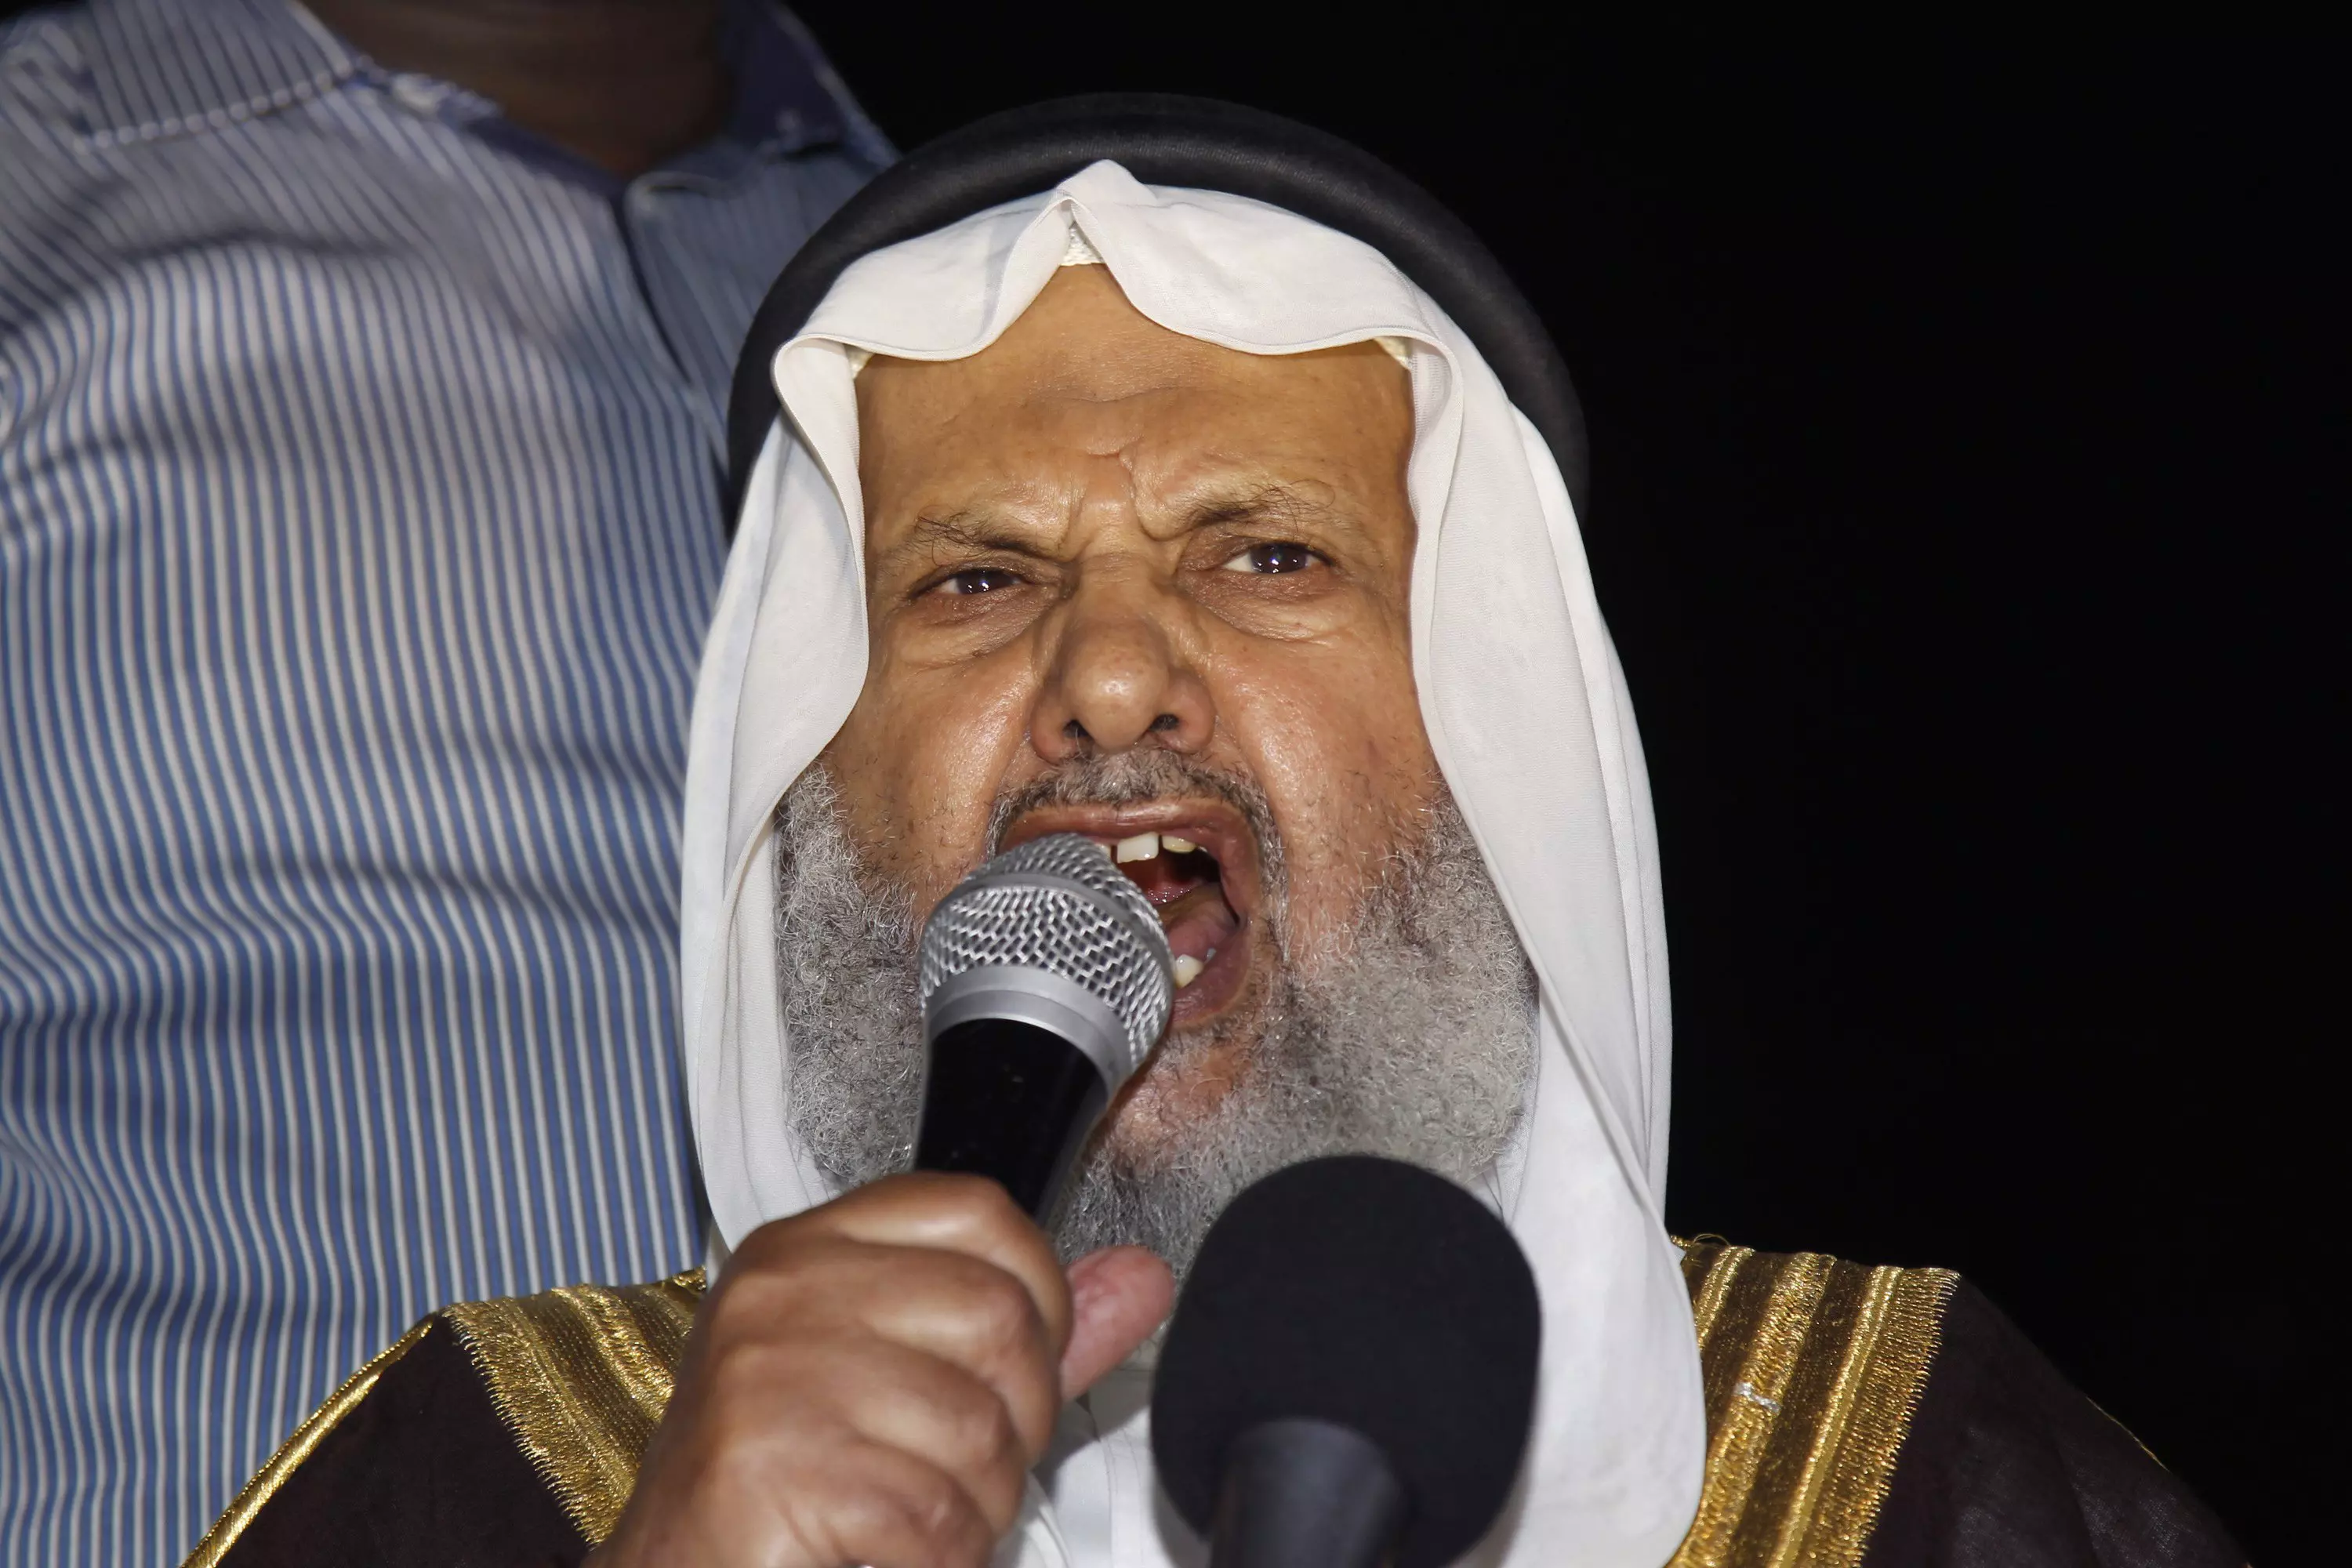 מנהיג "האחים המוסלמים" בירדן, שייח חמאם סעיד, אתמול בהפגנה